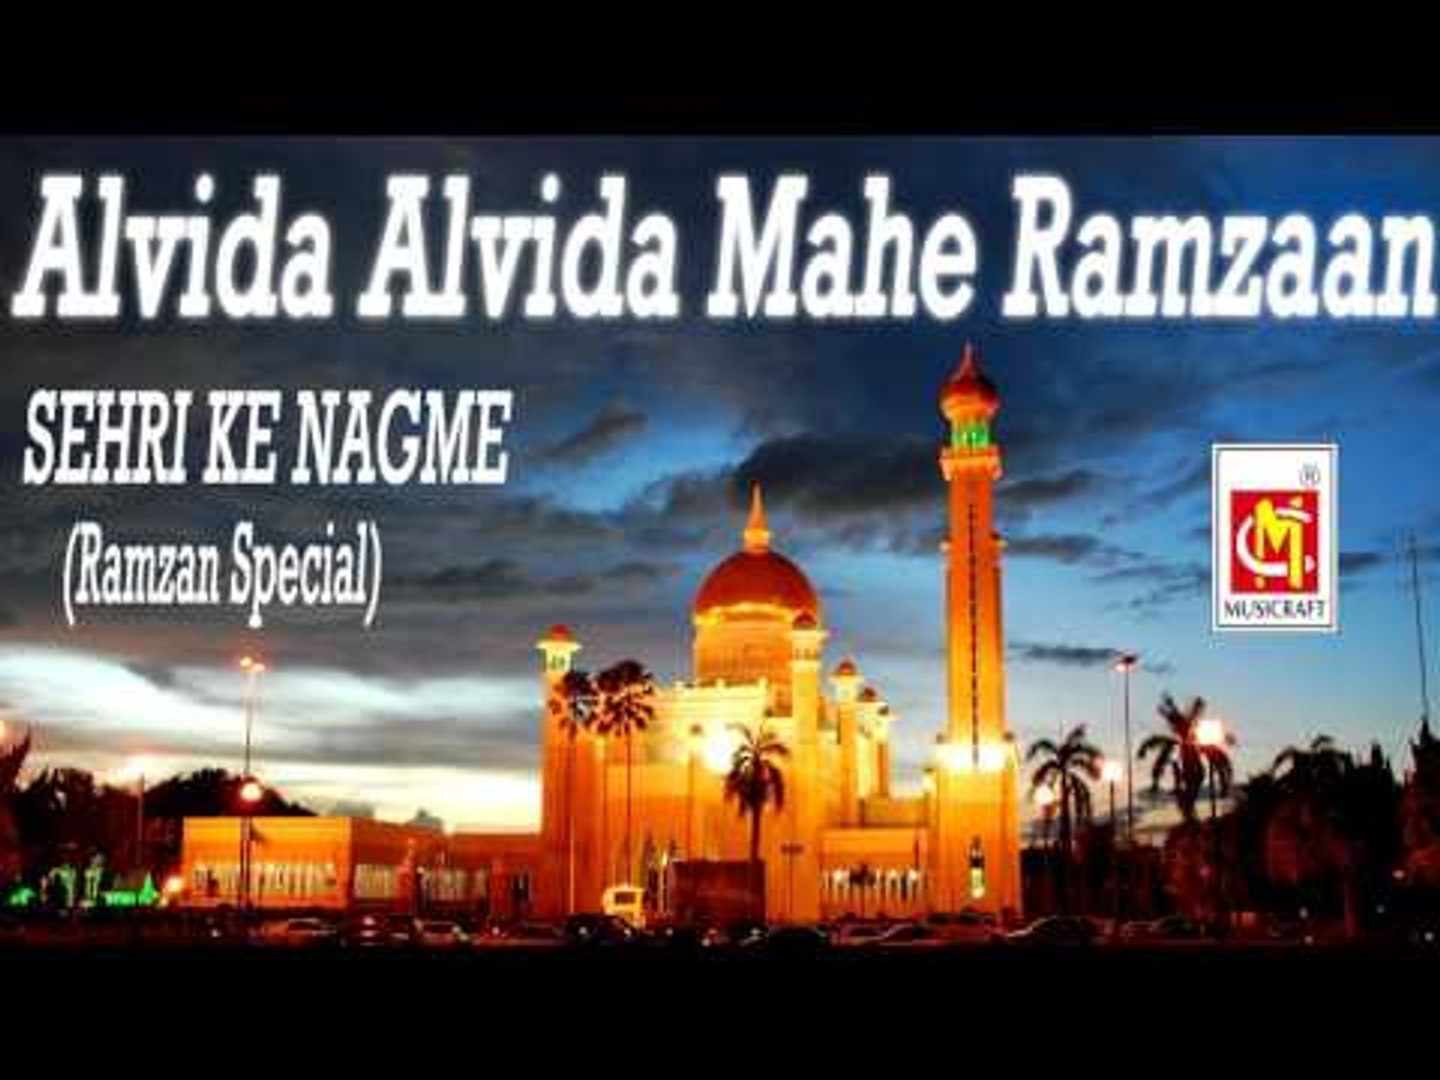 Alvida Alvida Mahe Ramzaan|| Sehri Ke Nagme (Ramzan Spcial ...